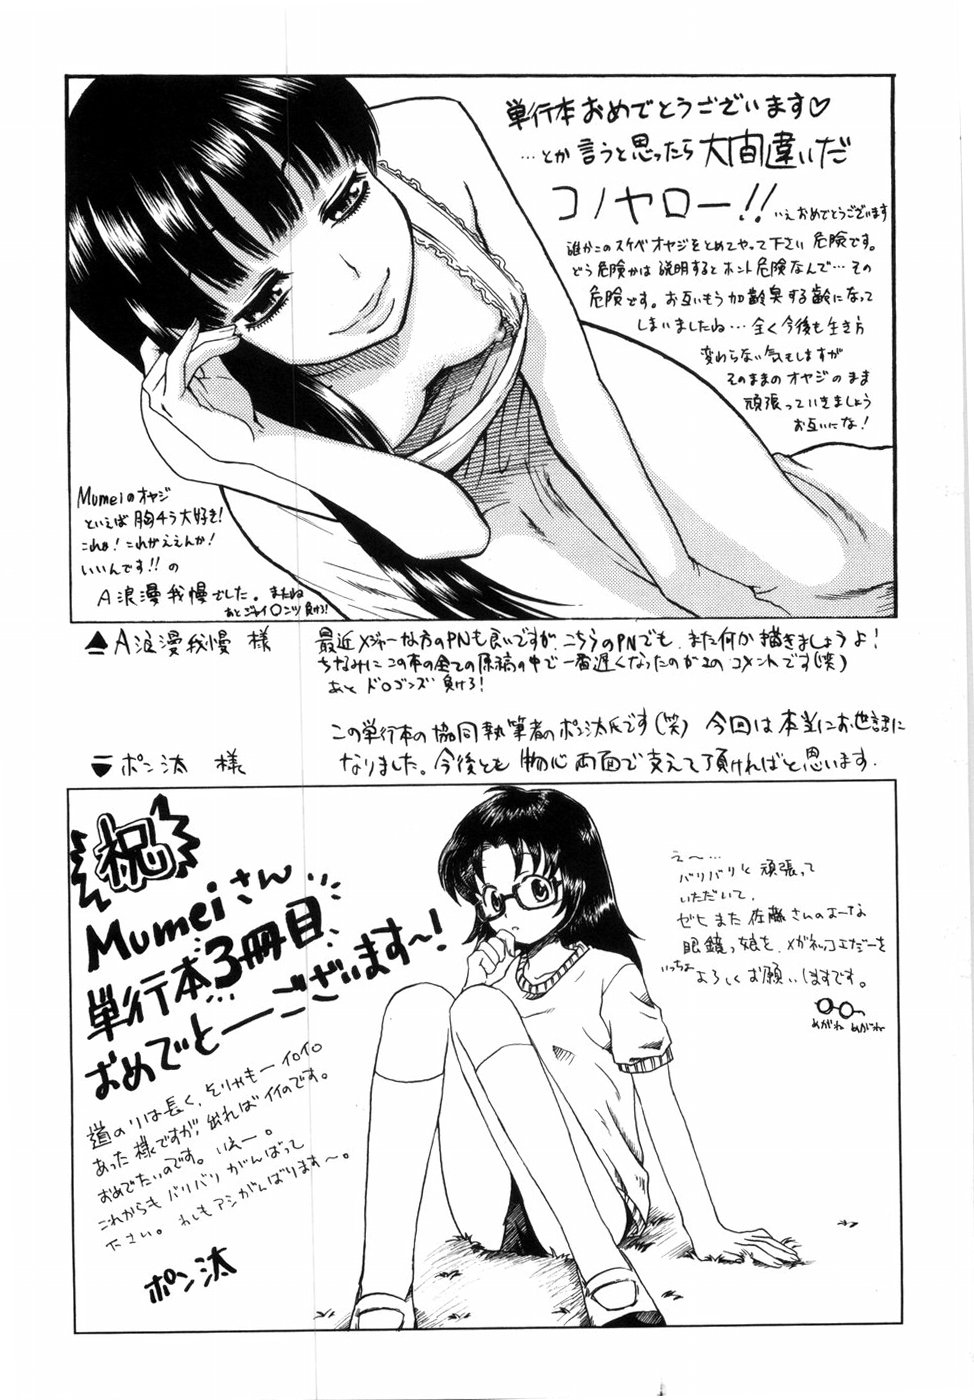 [Mumei] 少女たちの卑密